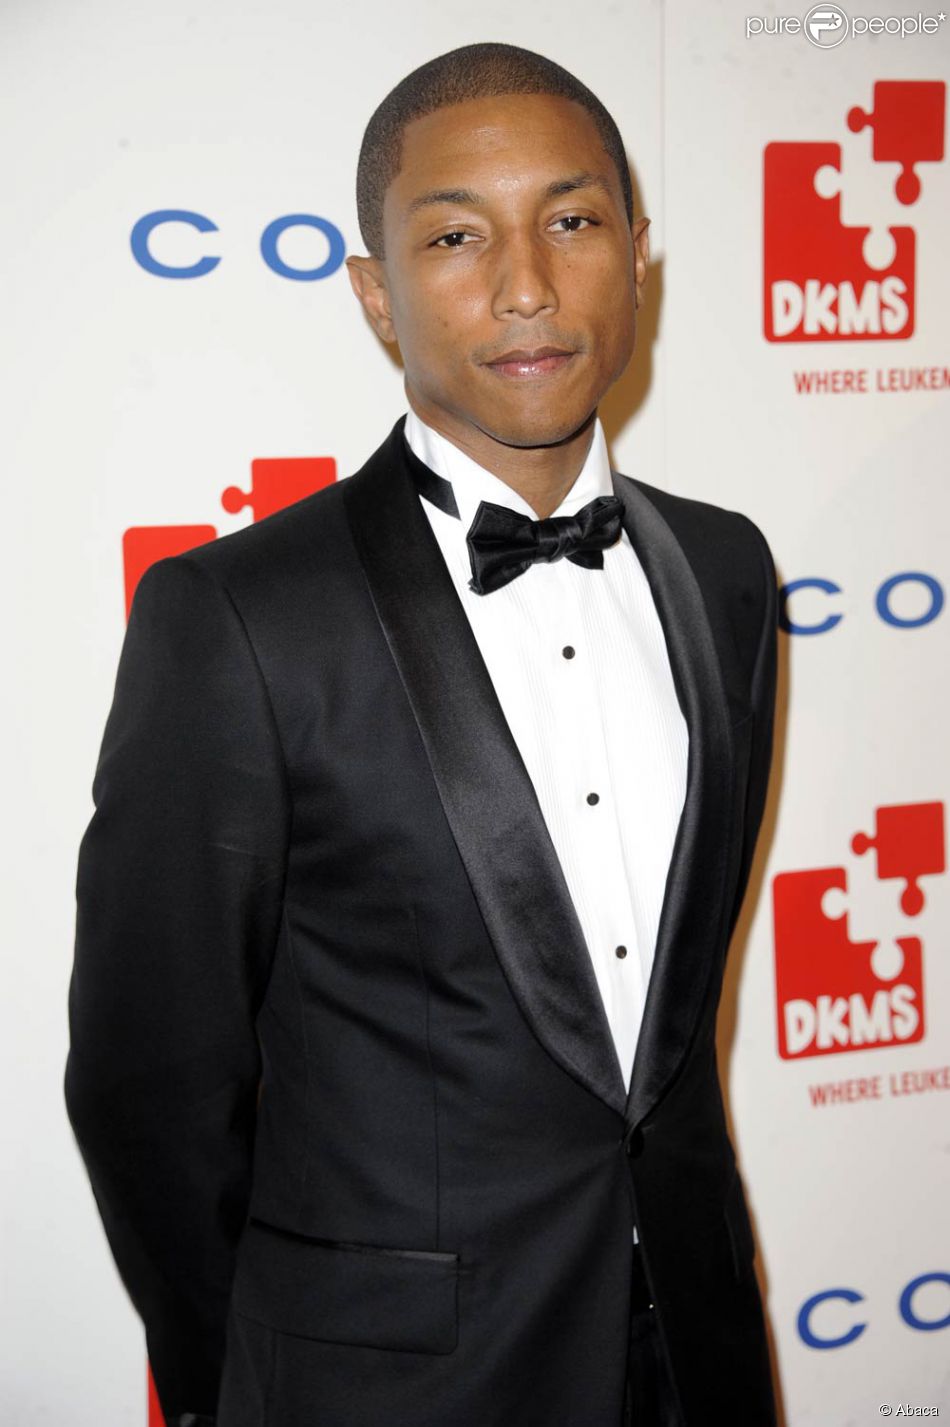 Pharrell Williams à la soirée DKMS, organisée dans le but de lever des fonds pour lutter contre la leucémie. 28 avril 2011